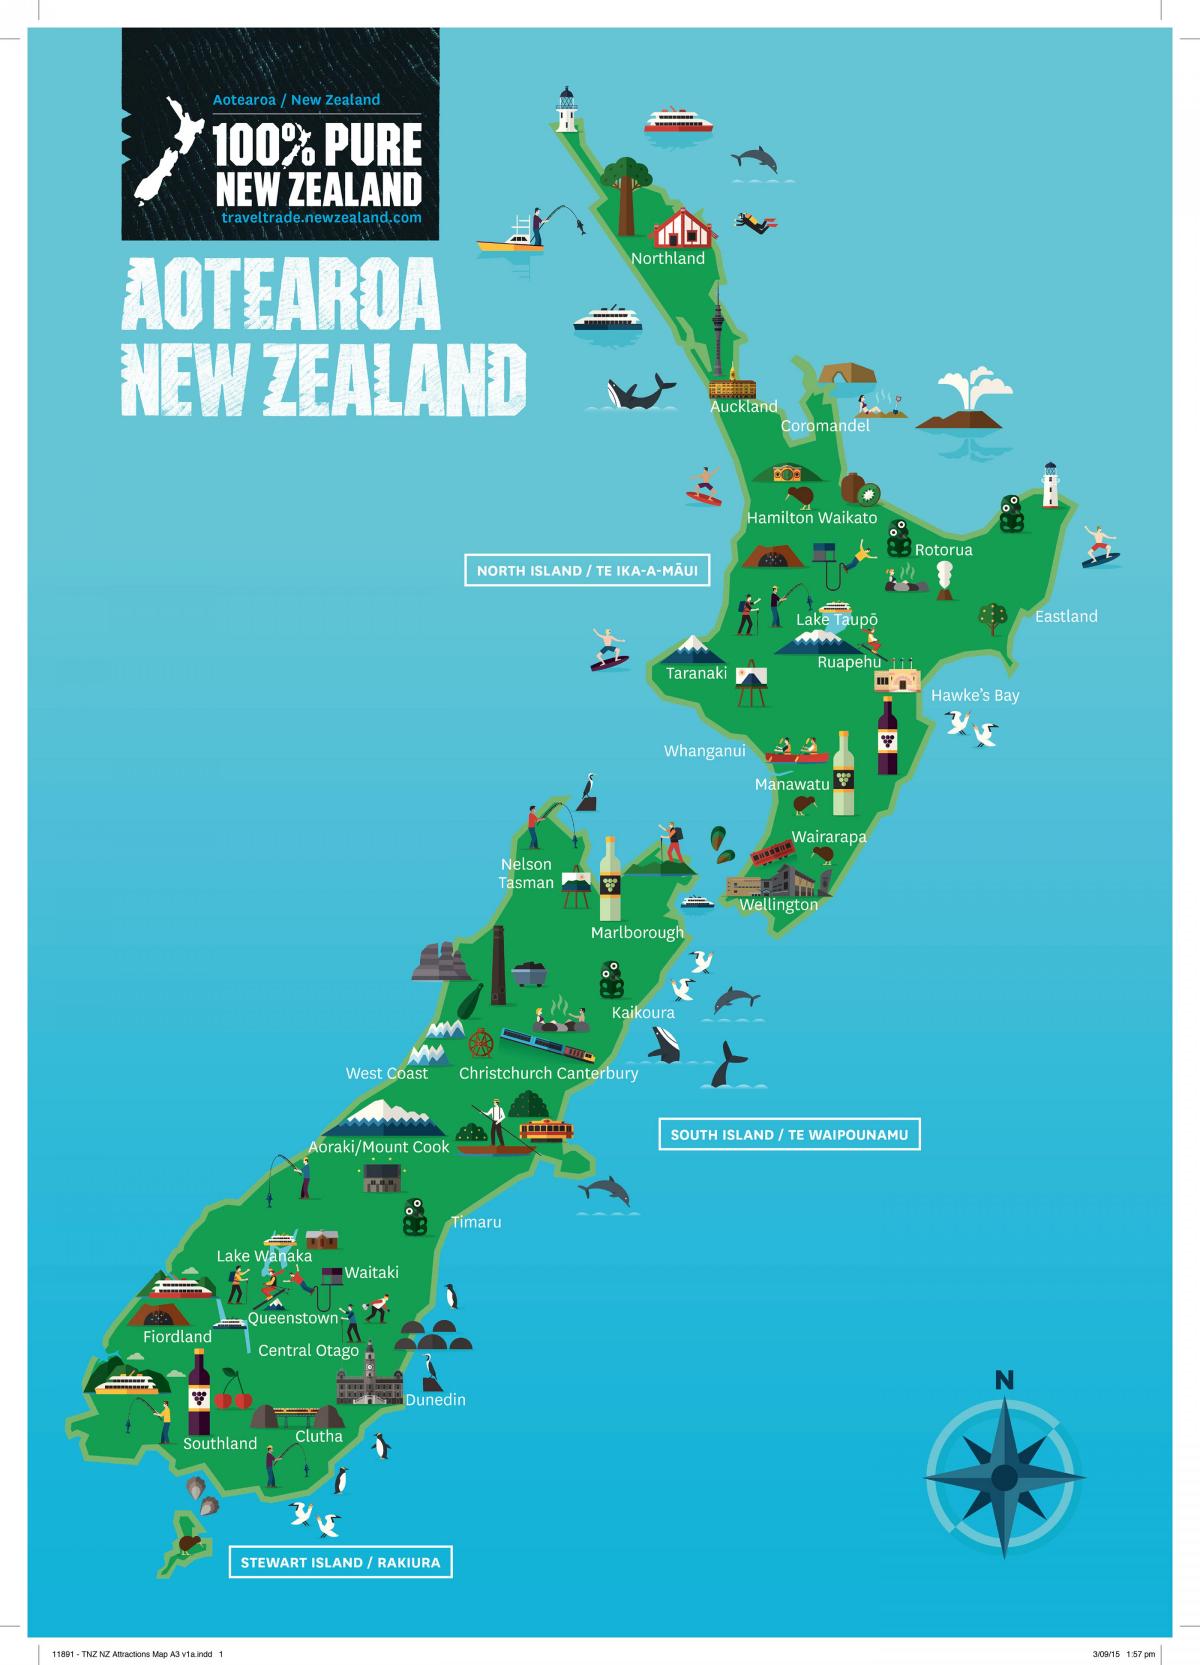 Mapa das atrações turísticas da Nova Zelândia